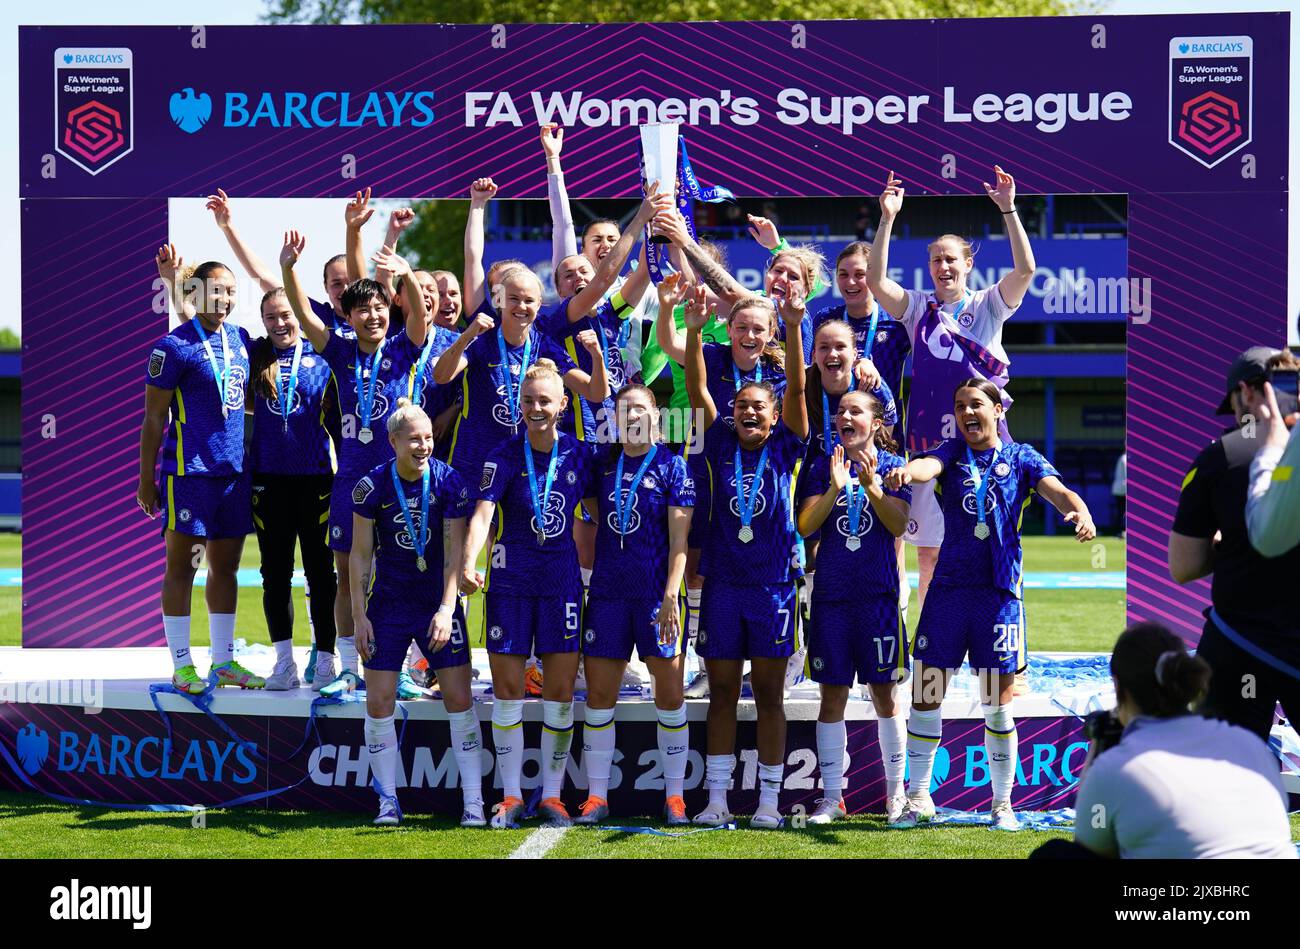 Foto del archivo fechada el 08-05-2022 de Magdalena Eriksson del Chelsea levantando la Superliga Femenina Barclays FA. La edición de 12th de la Super Liga Femenina se pone en marcha este fin de semana en medio de una sensación sin precedentes de entusiasmo y entusiasmo tras el trascendental verano de Inglaterra. Fecha de emisión: Miércoles 7 de septiembre de 2022. Foto de stock